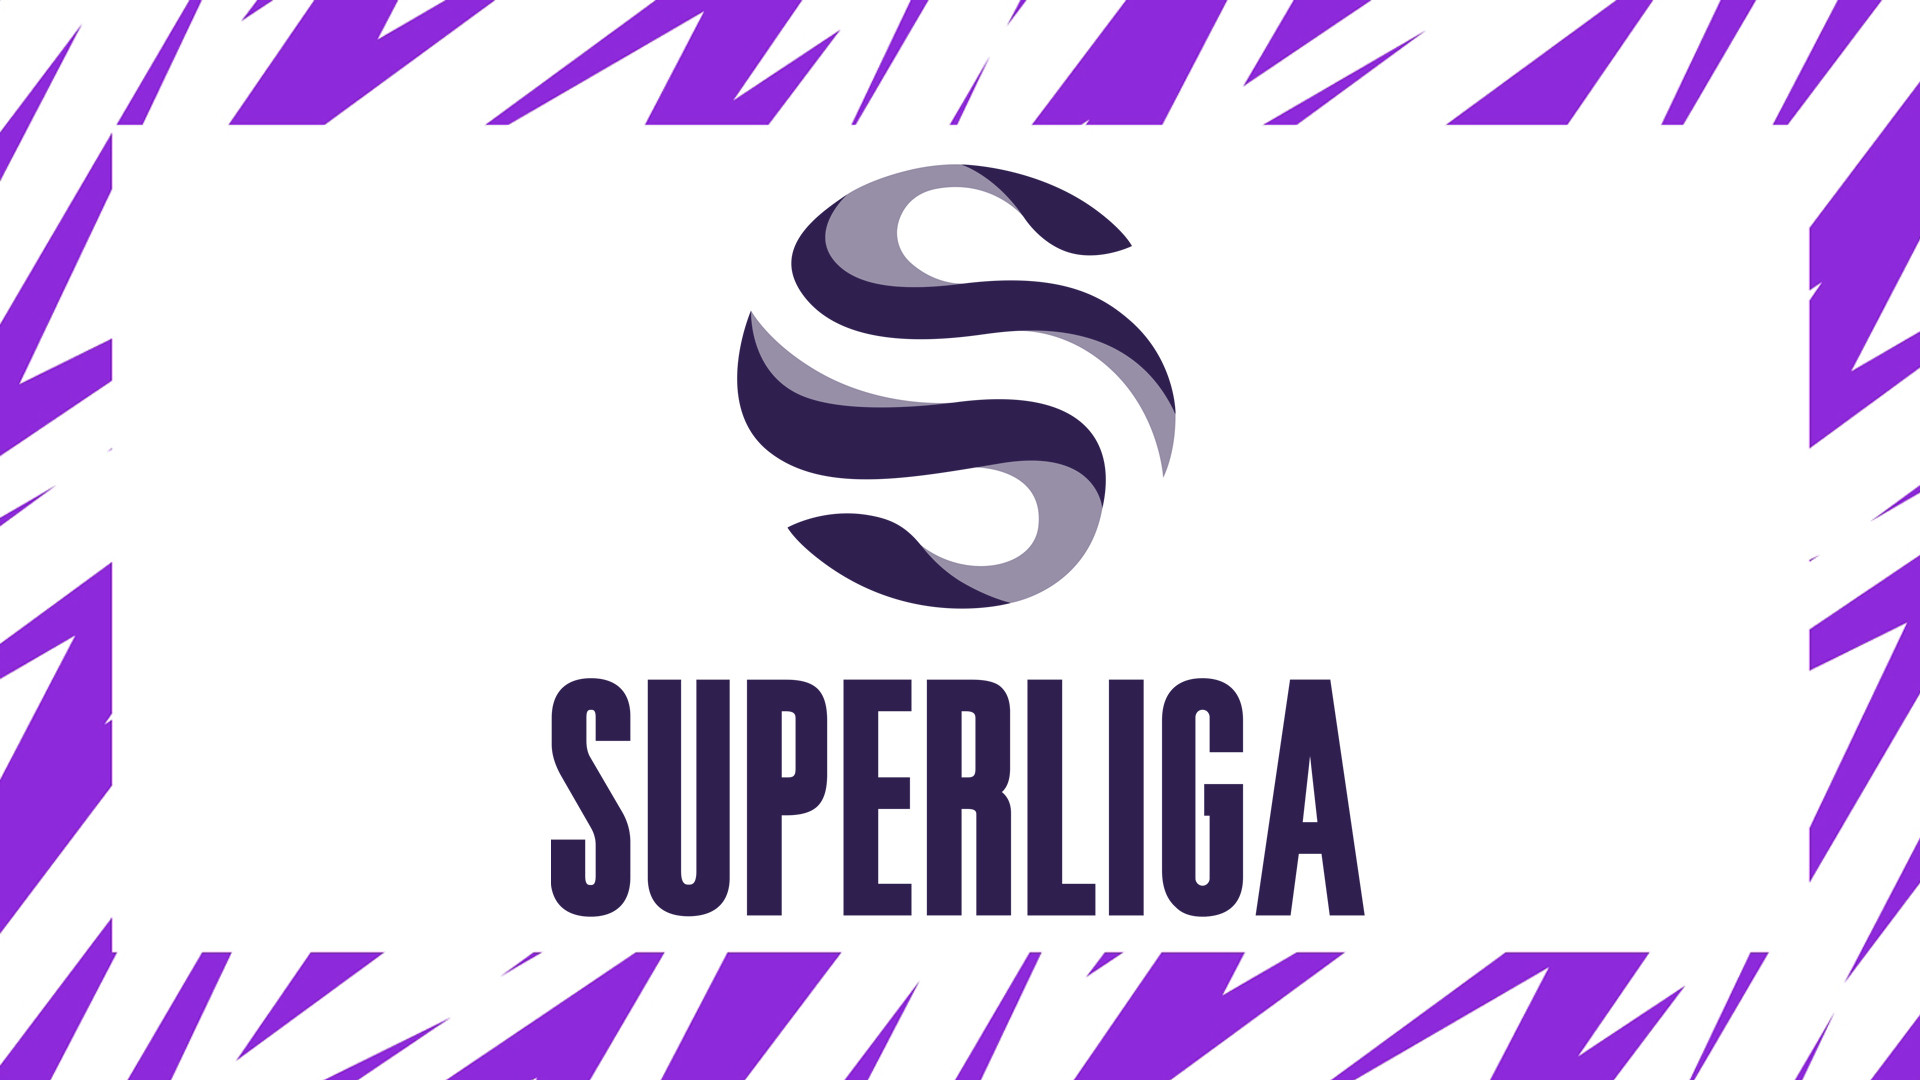 Suivez les résultats du Summer 2022 de la LVP Superliga